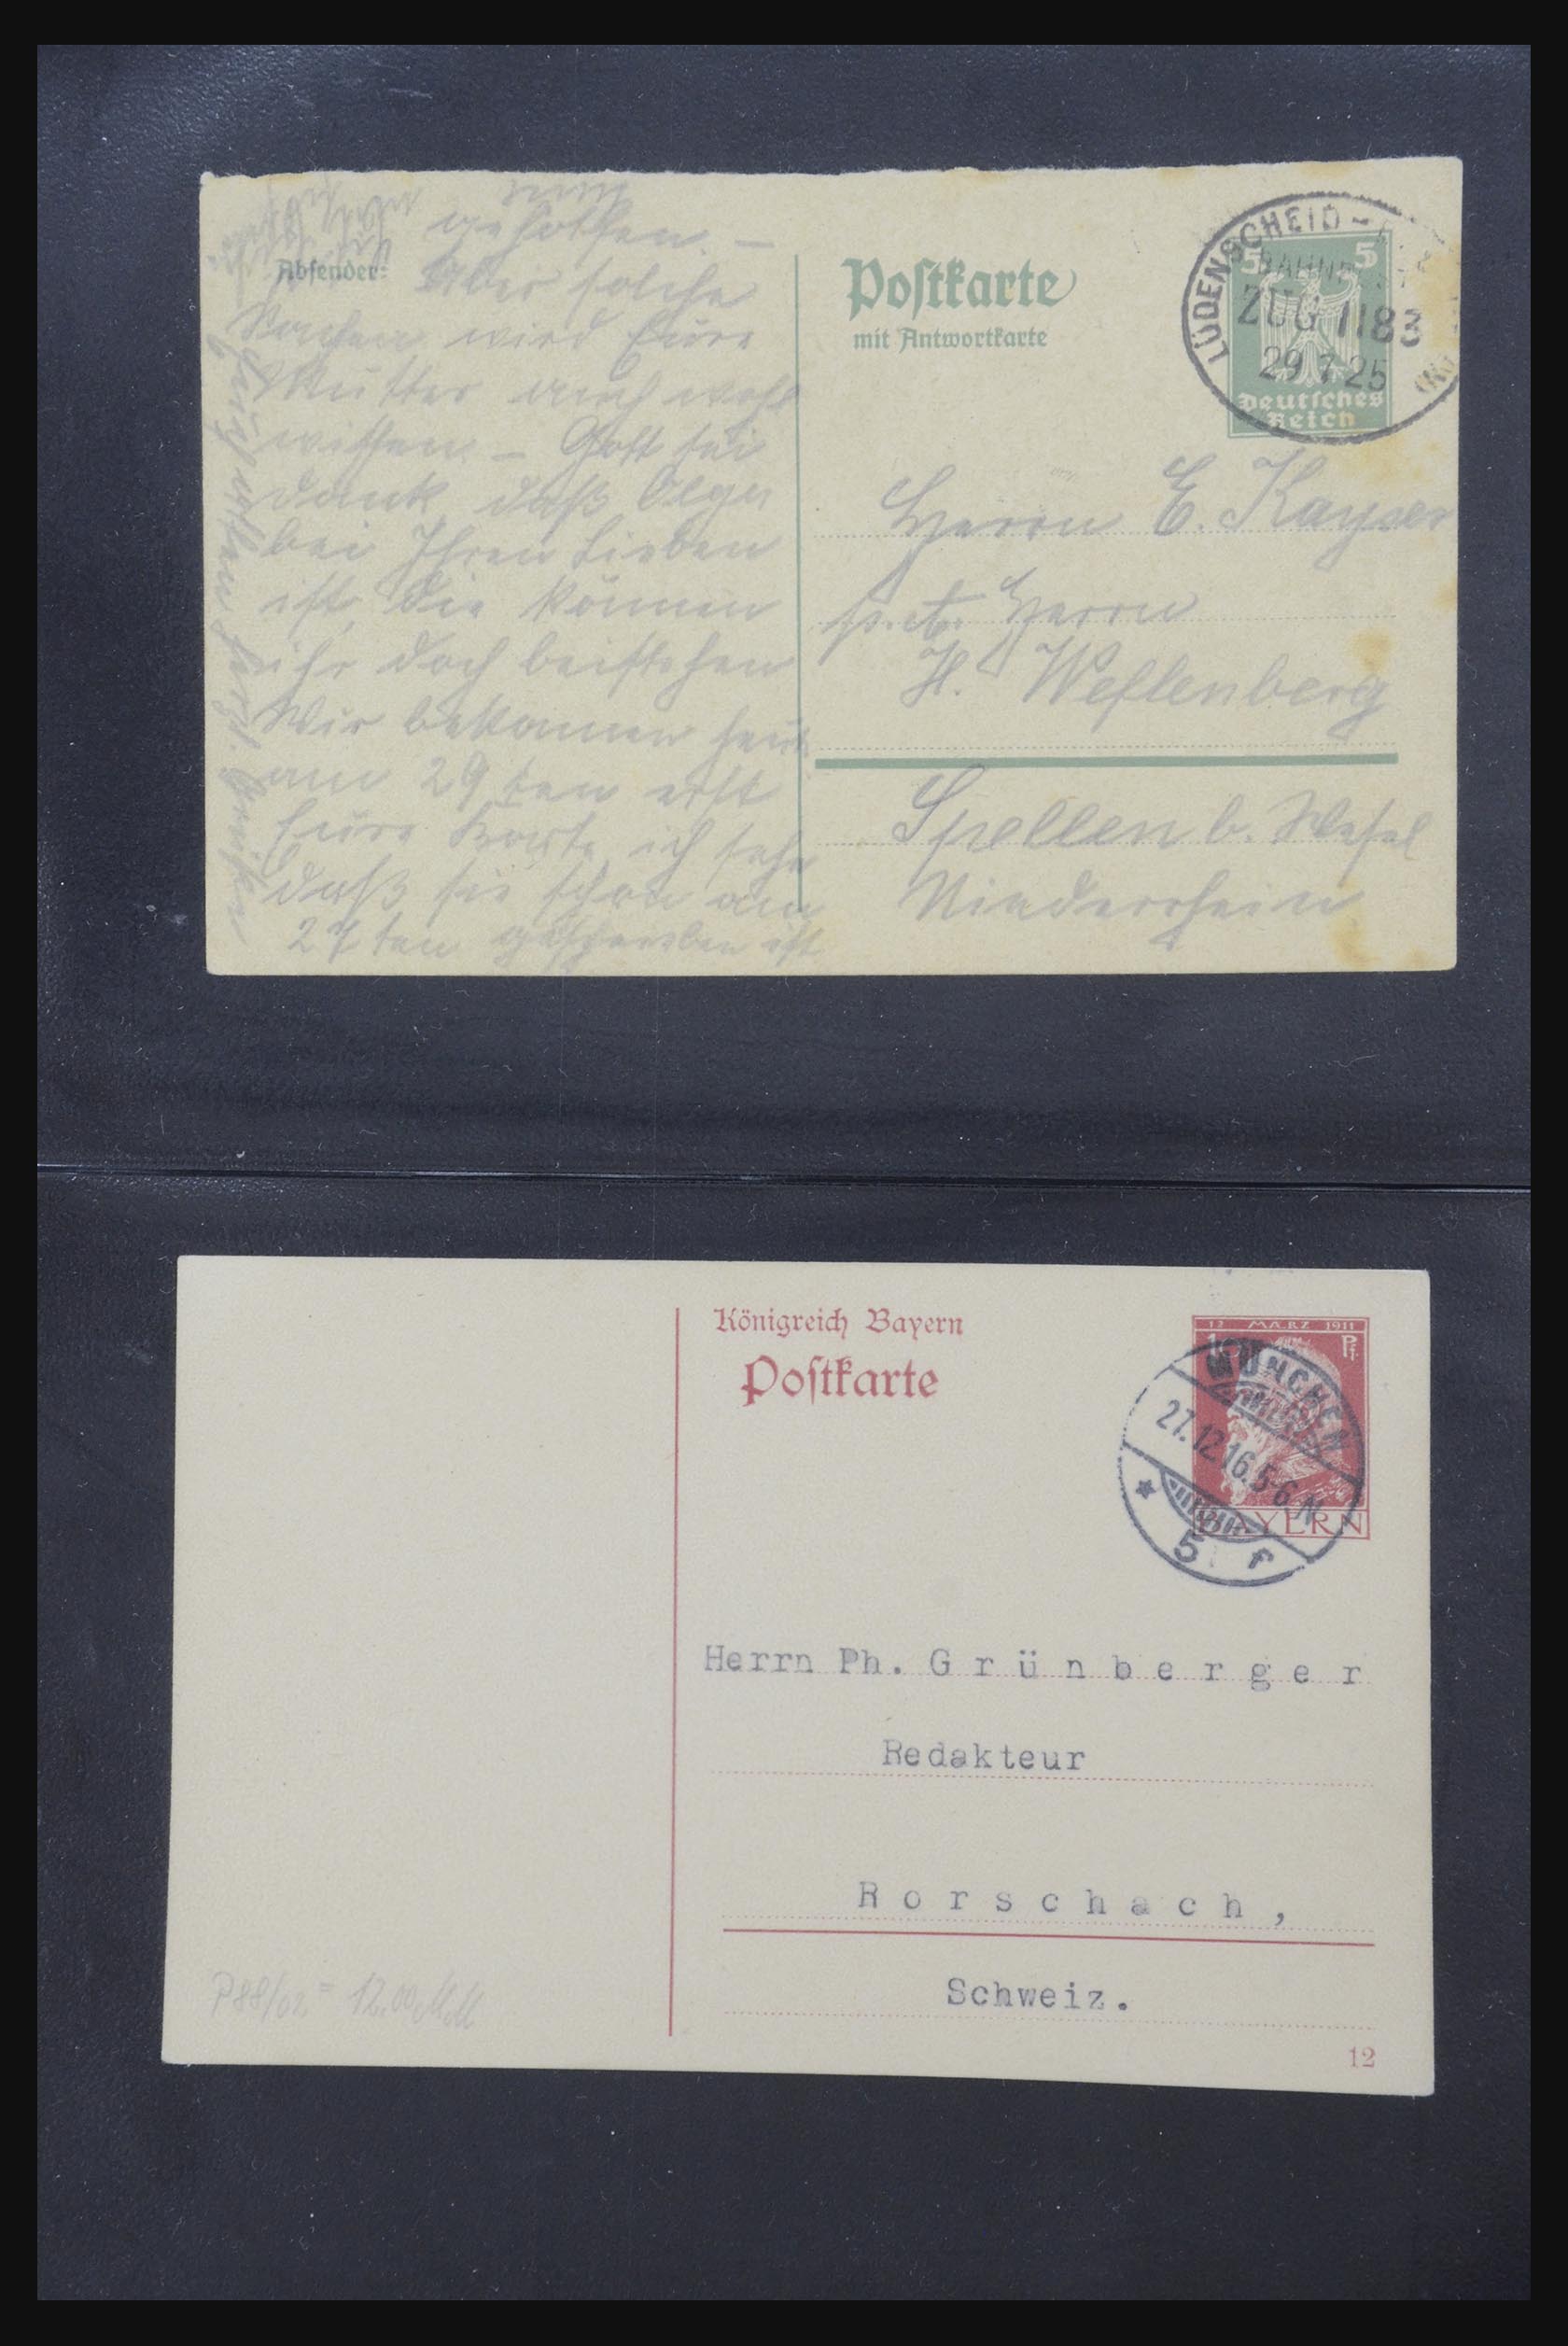 31952 431 - 31952 German Reich cards.